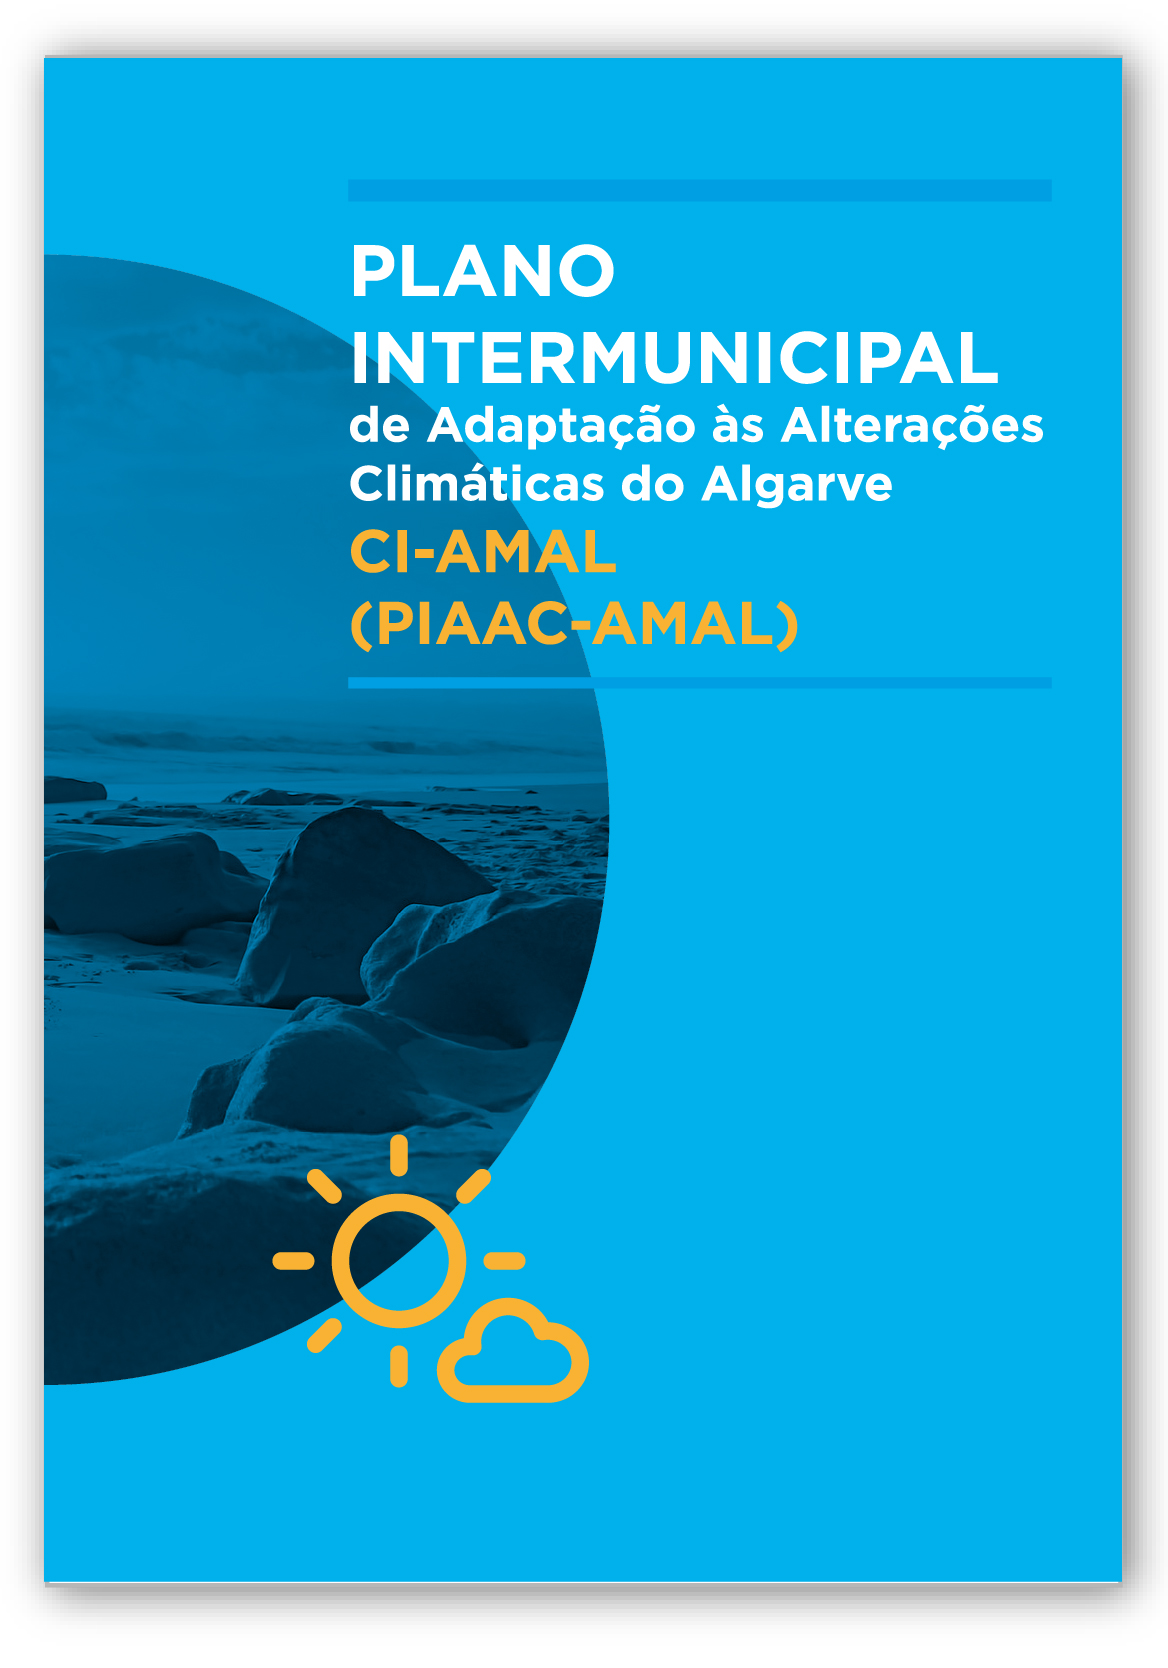 Plano Intermunicipal de Adaptação às Alterações Climáticas (PIAAC - AMAL)